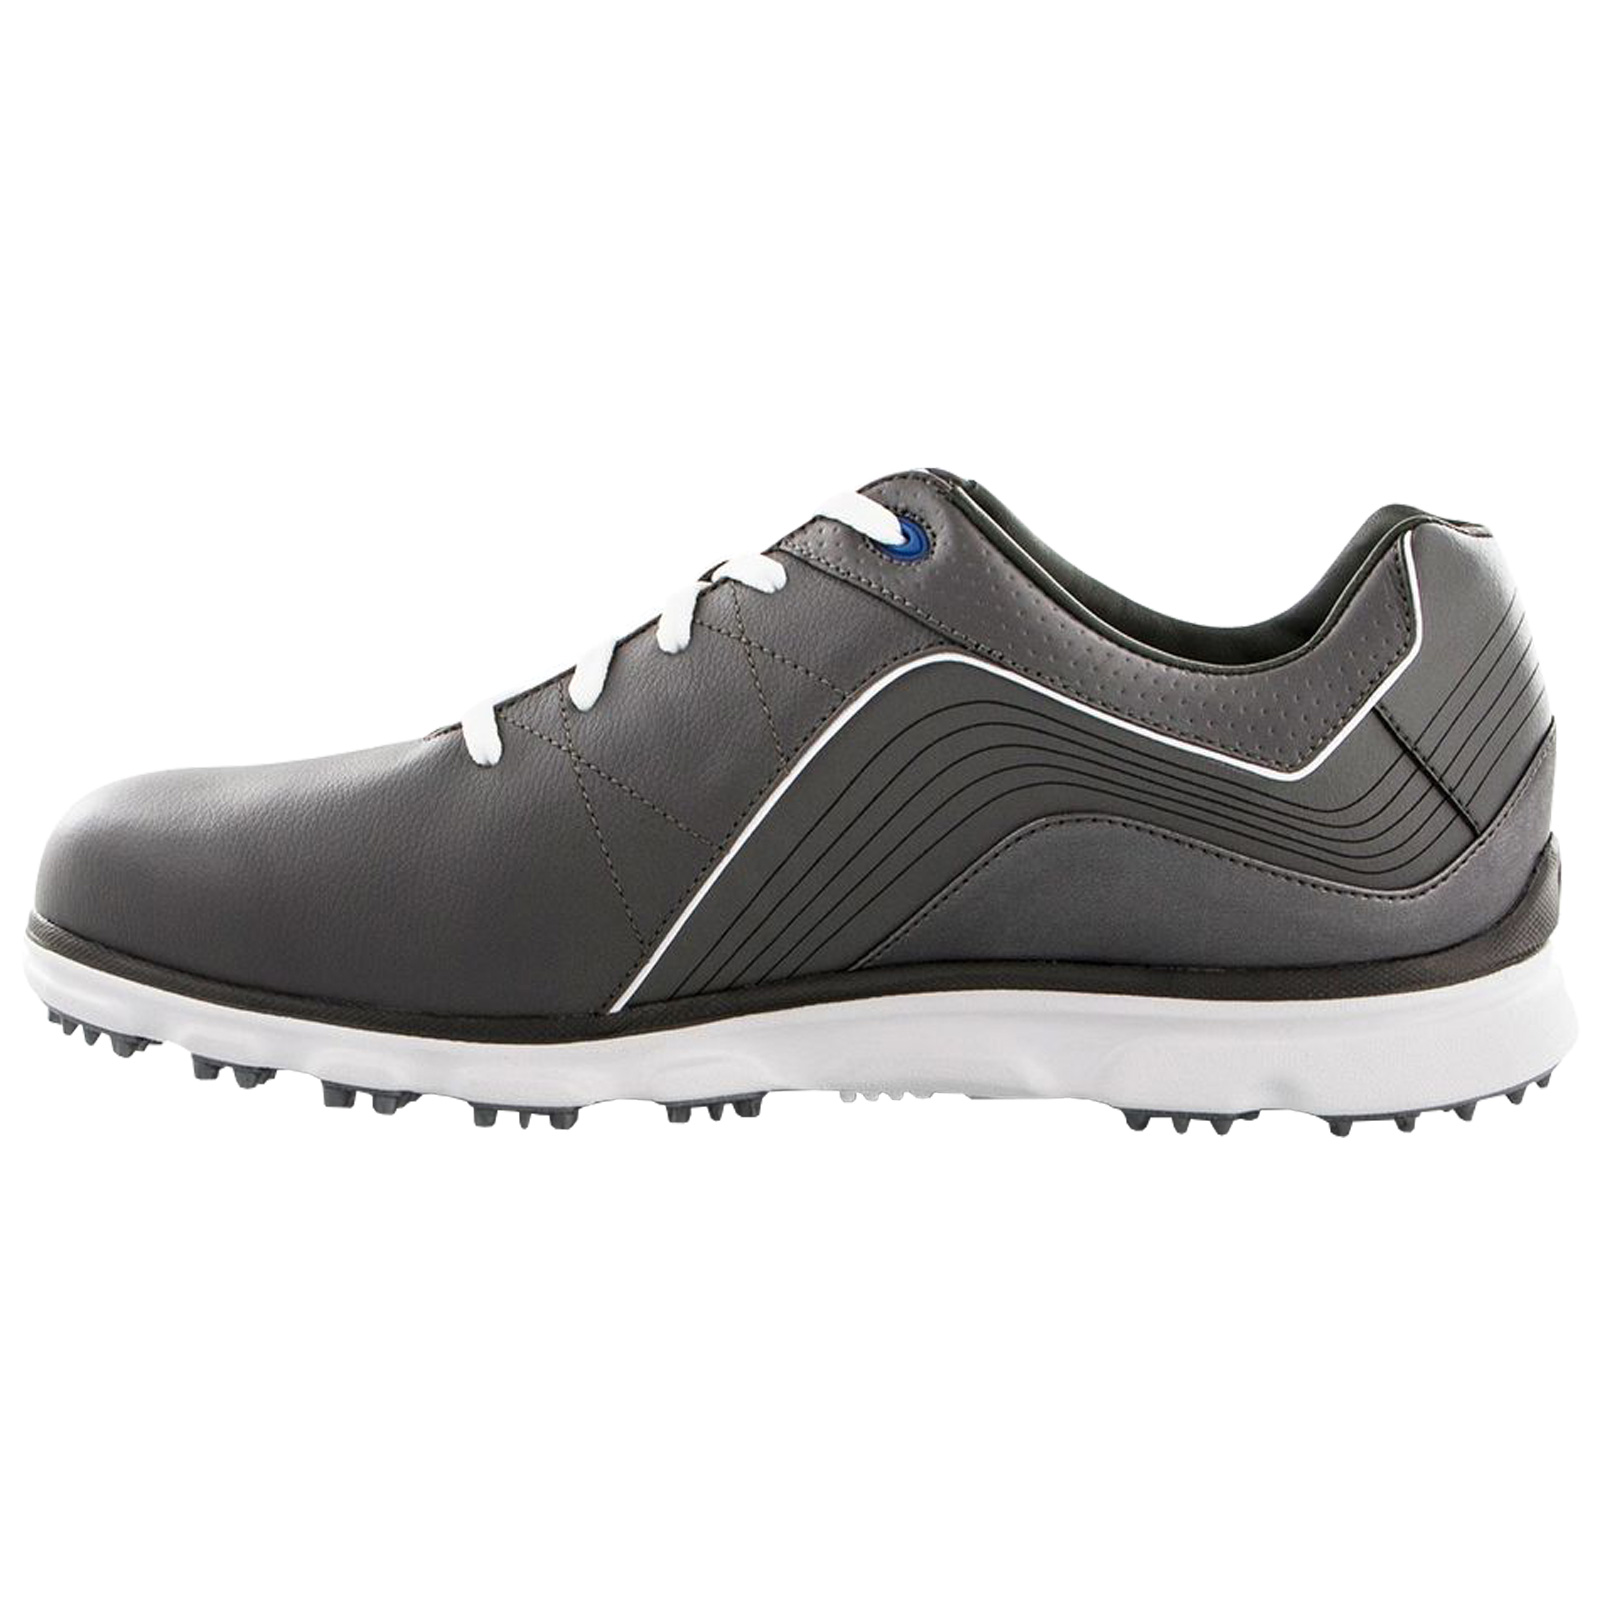 FootJoy Mens Pro SL Spikeless Waterproof Golf Shoes Lighweight